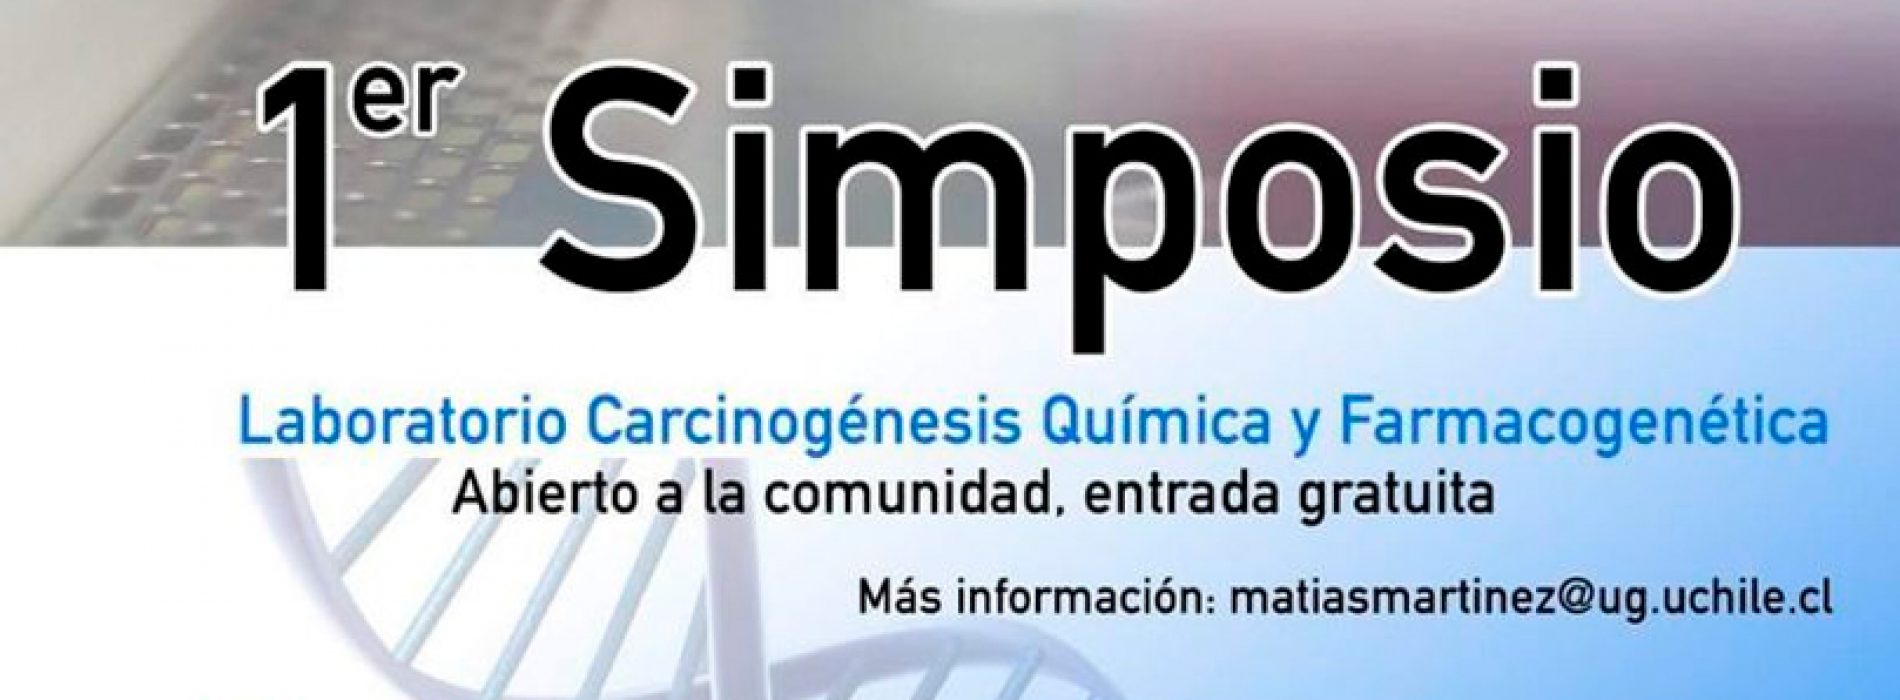 1st Symposium laboratory Cancinogenesis chemistry and pharmacogenetics